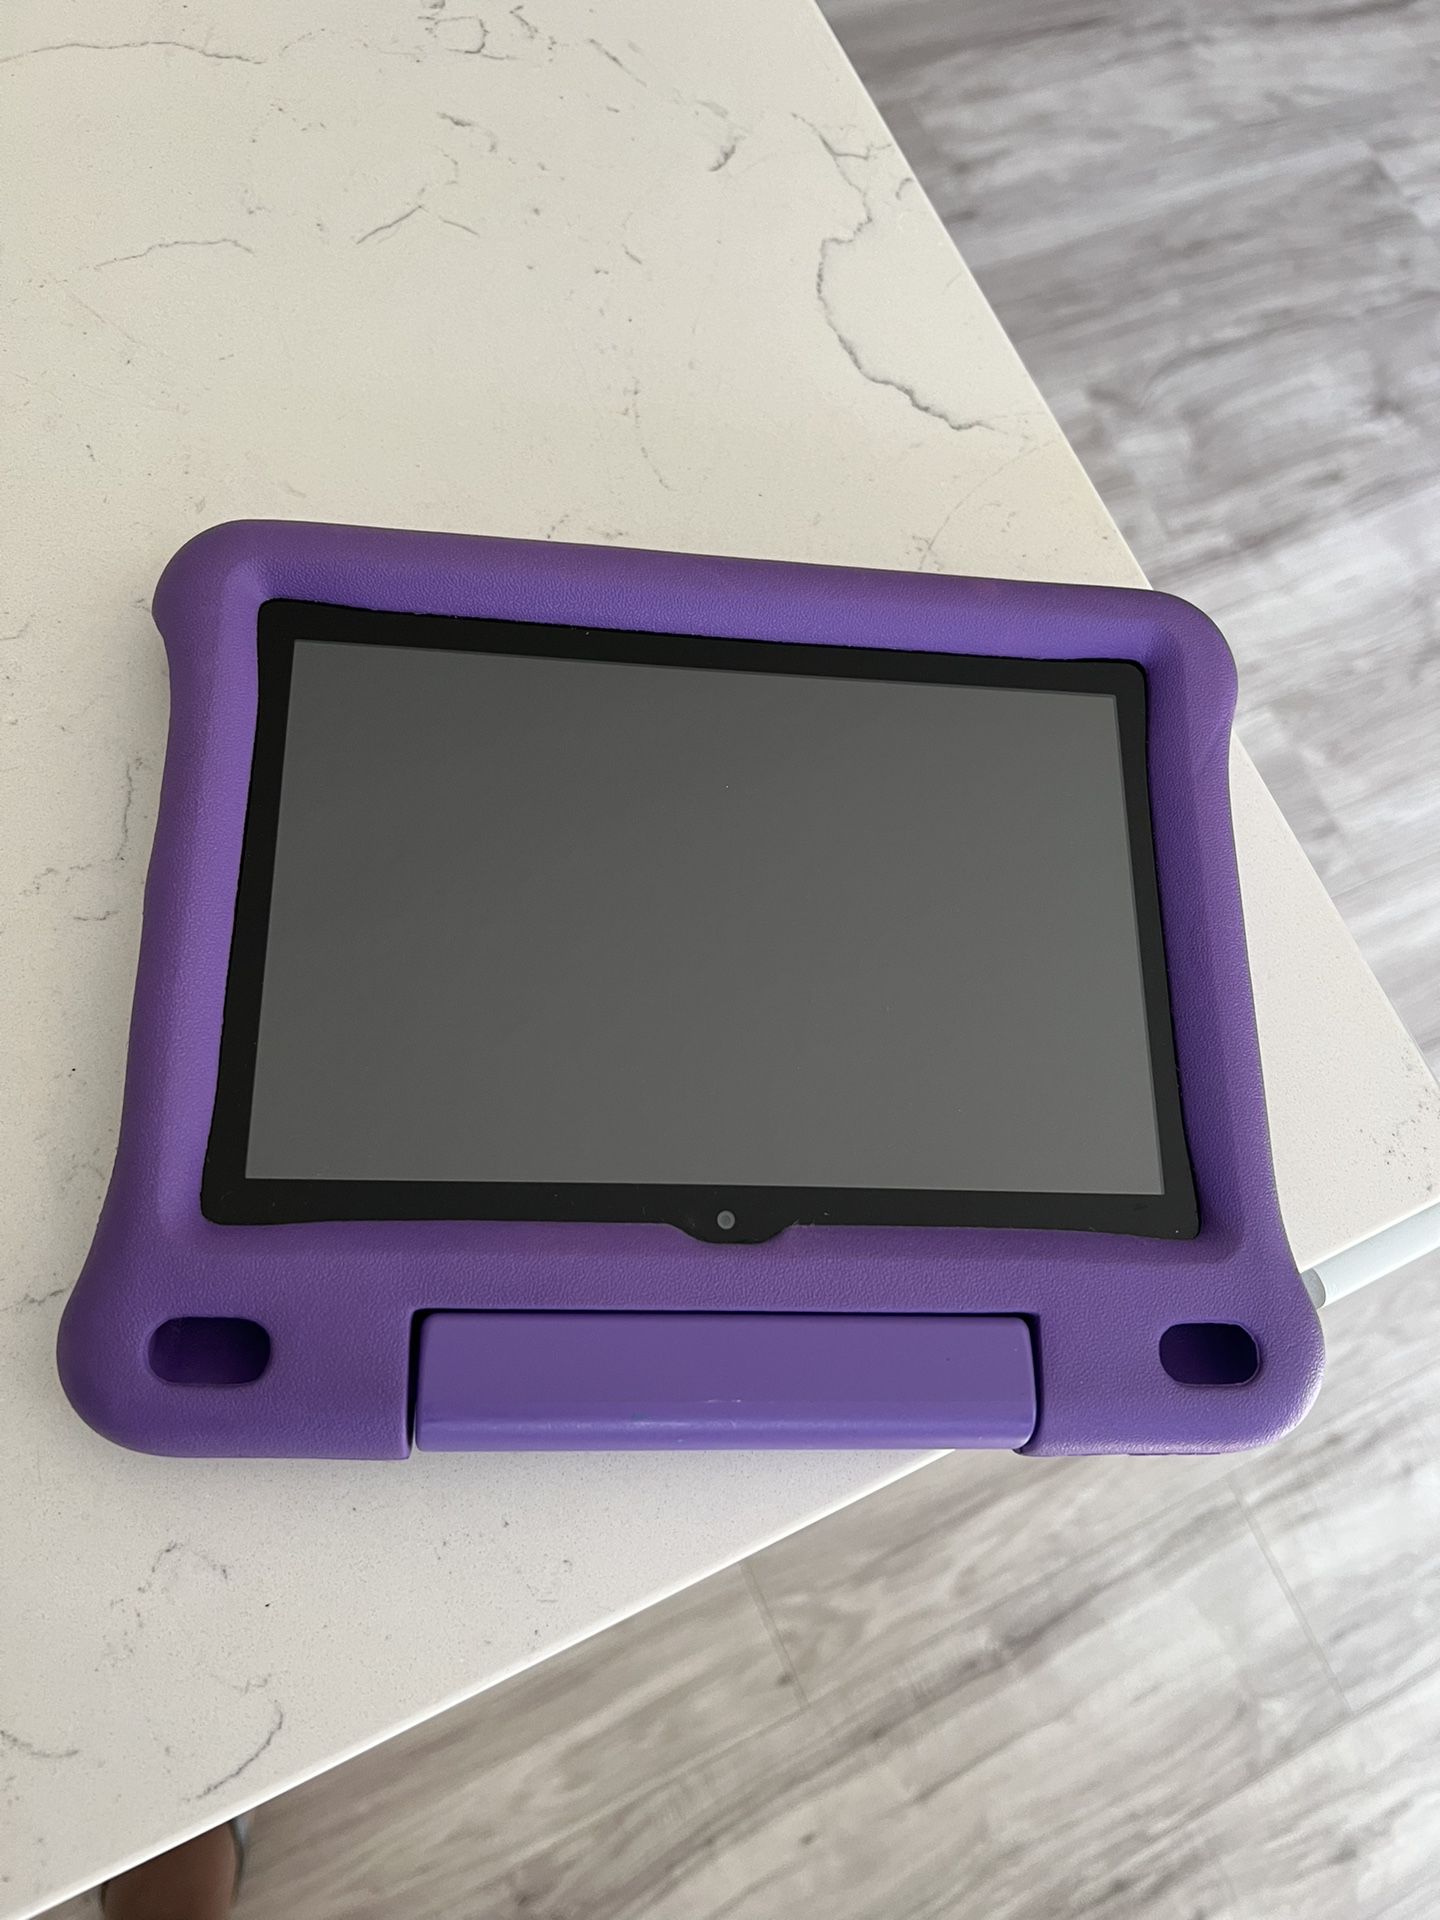 Amazon Fire HD 8 Kids Tablet, 32 GB - Purple Case (2020 Release)